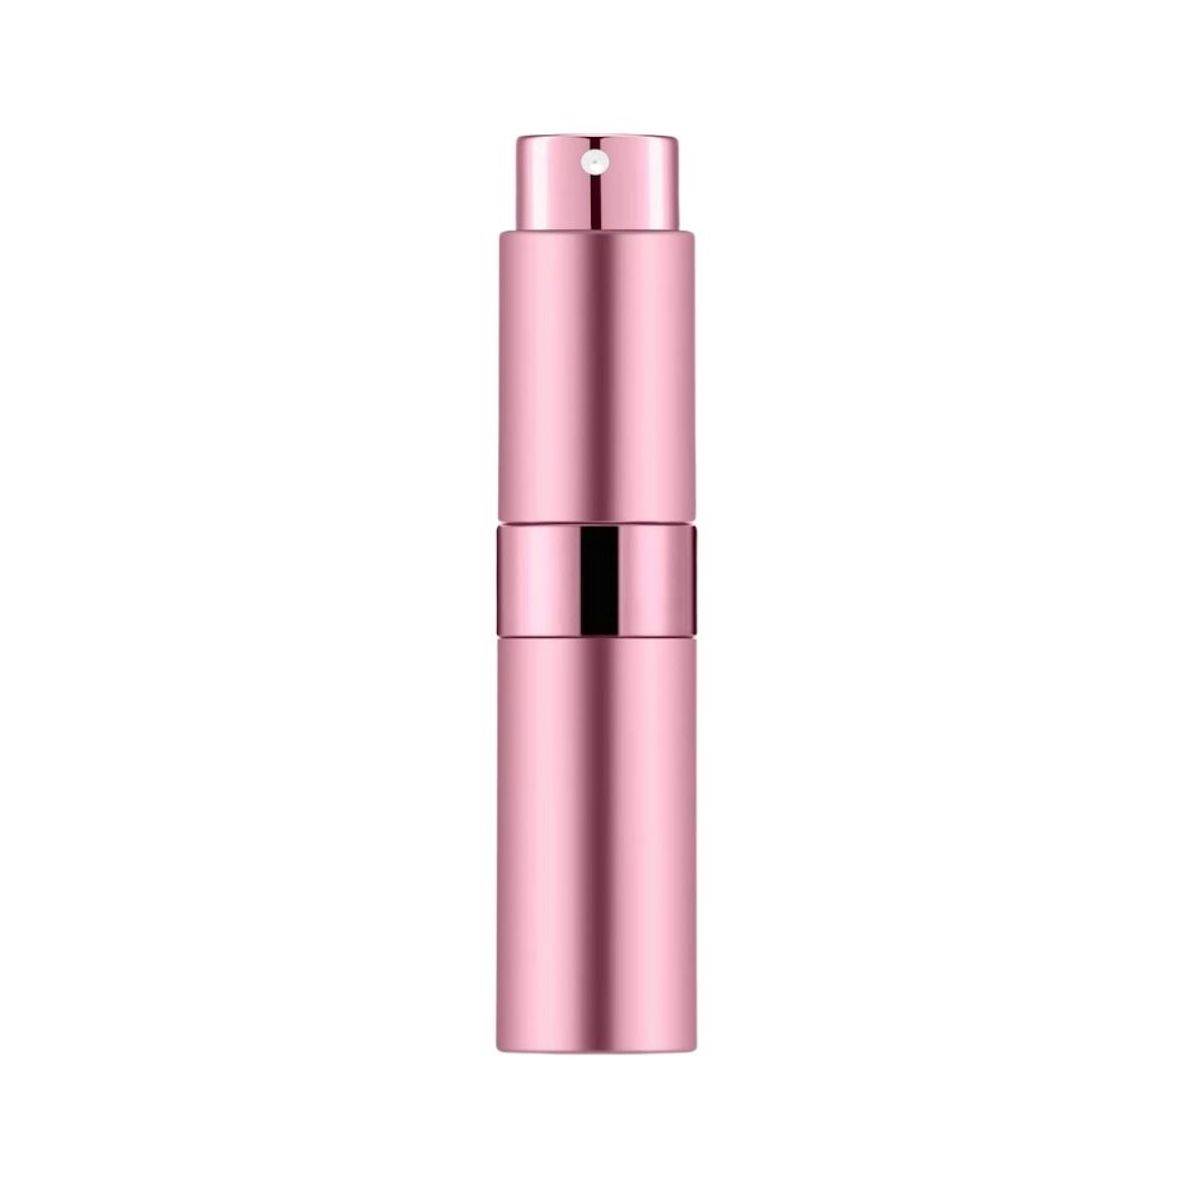 UNIQ Travel Perfume Spray Bottle; 8 ml - Rosa